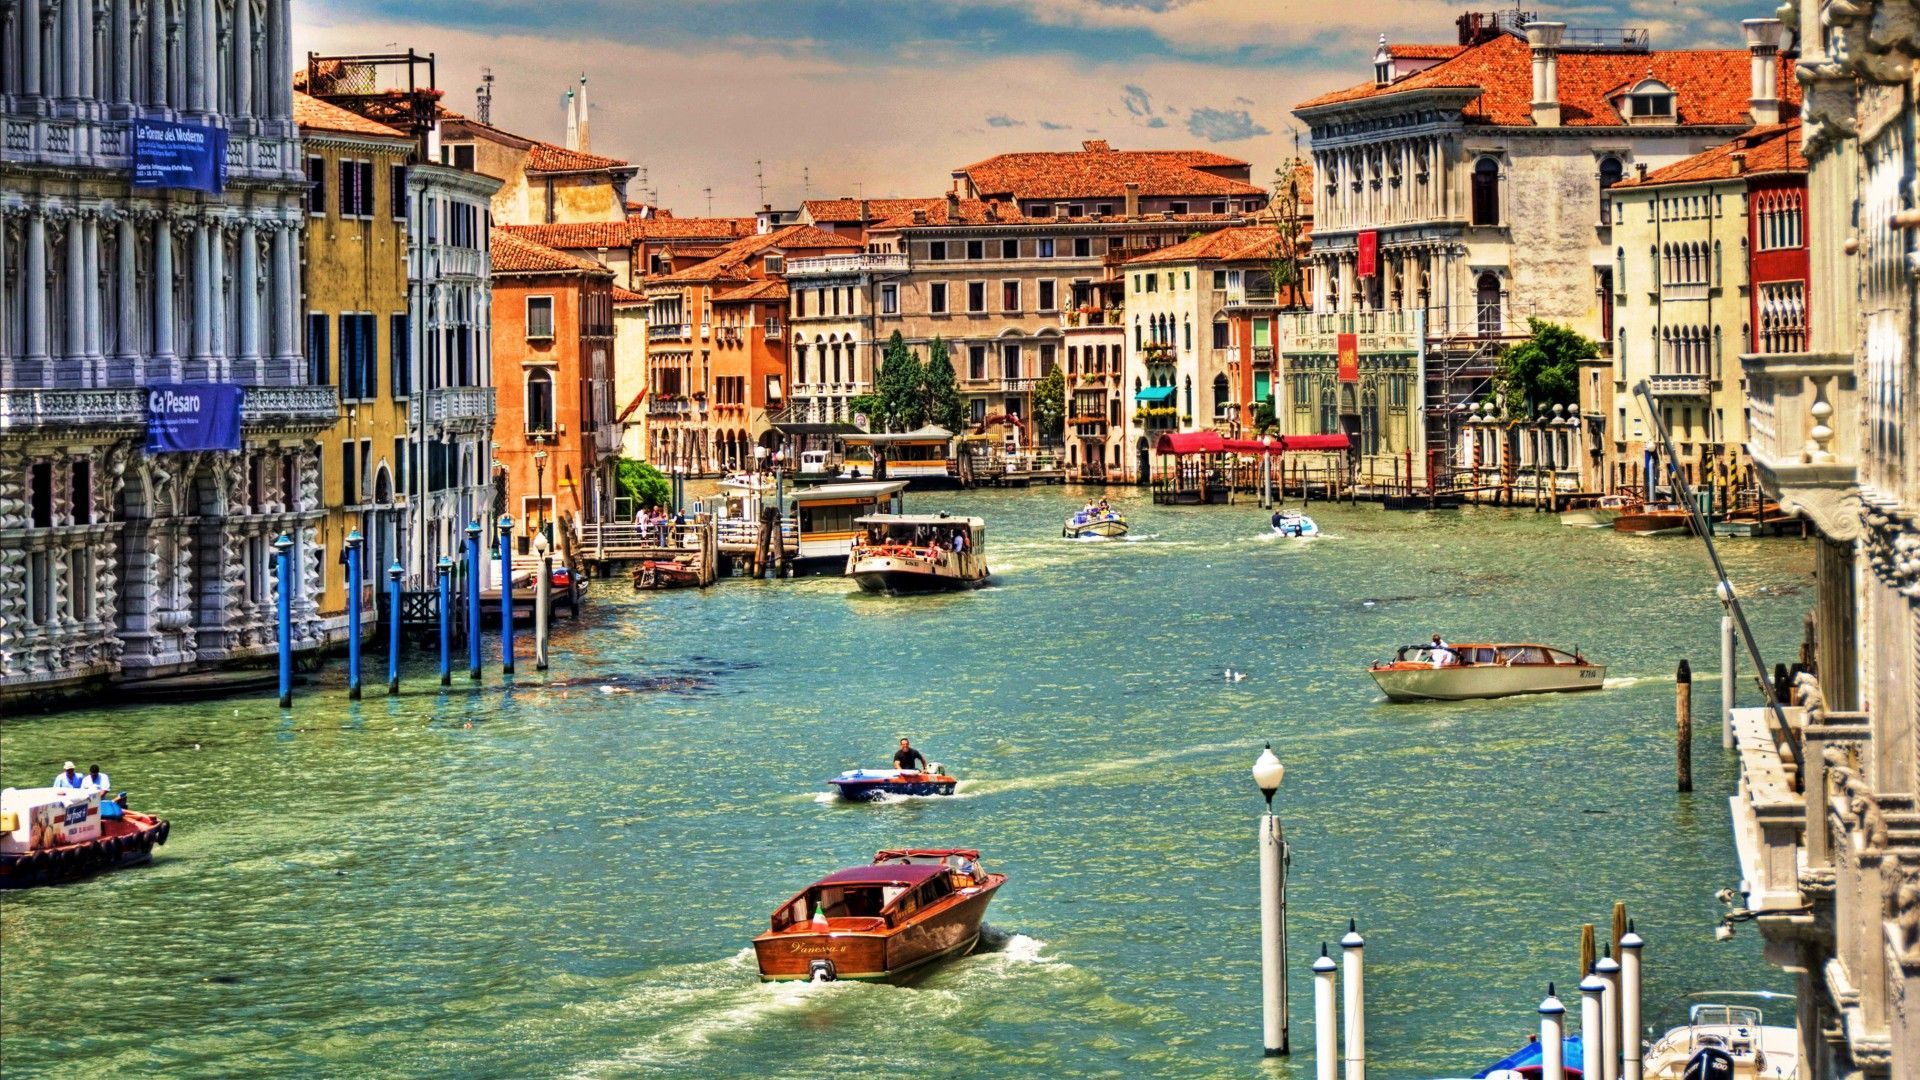 Grande Tag wallpapers: Venecia Canal Grande Aguas Image Gallery ...